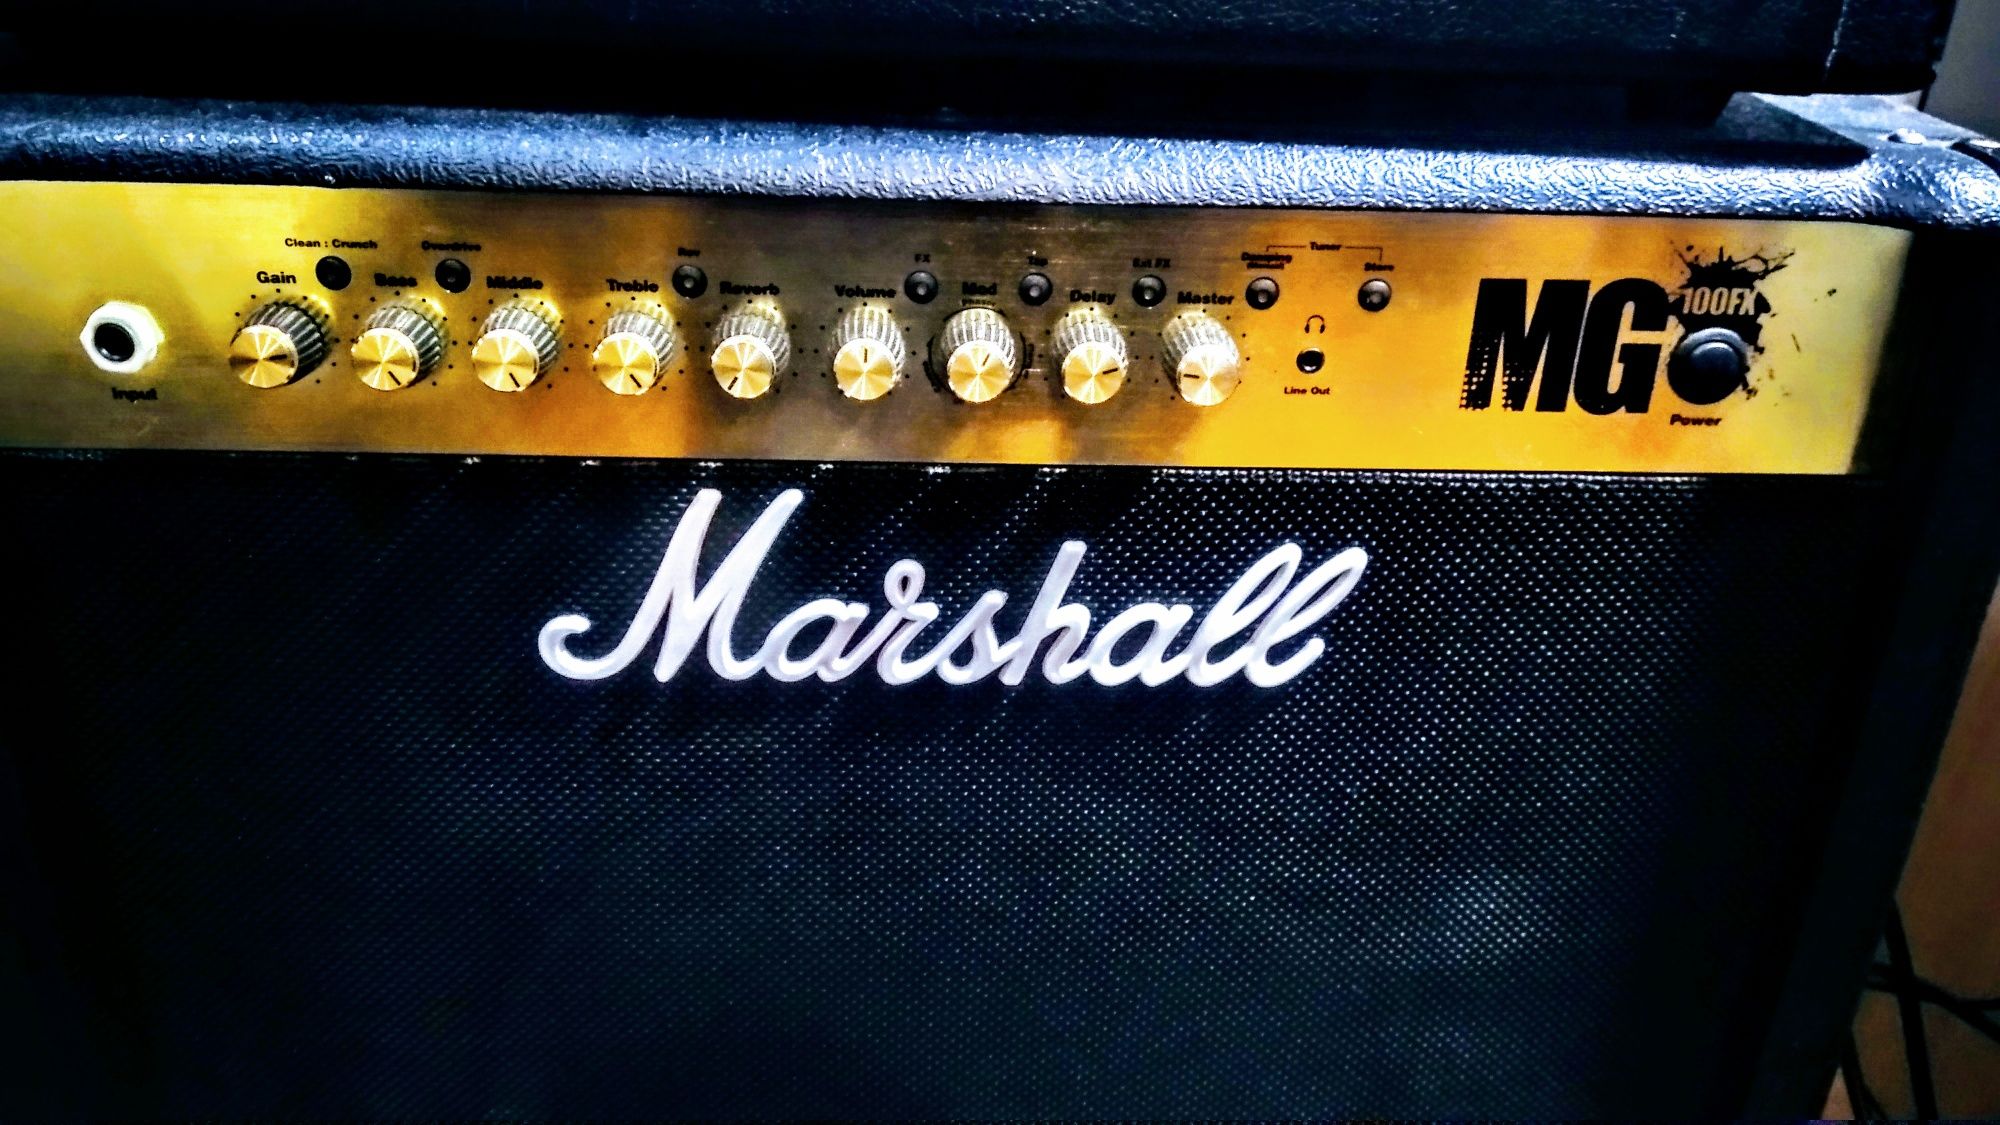 Продается Marshall MG 100 FX